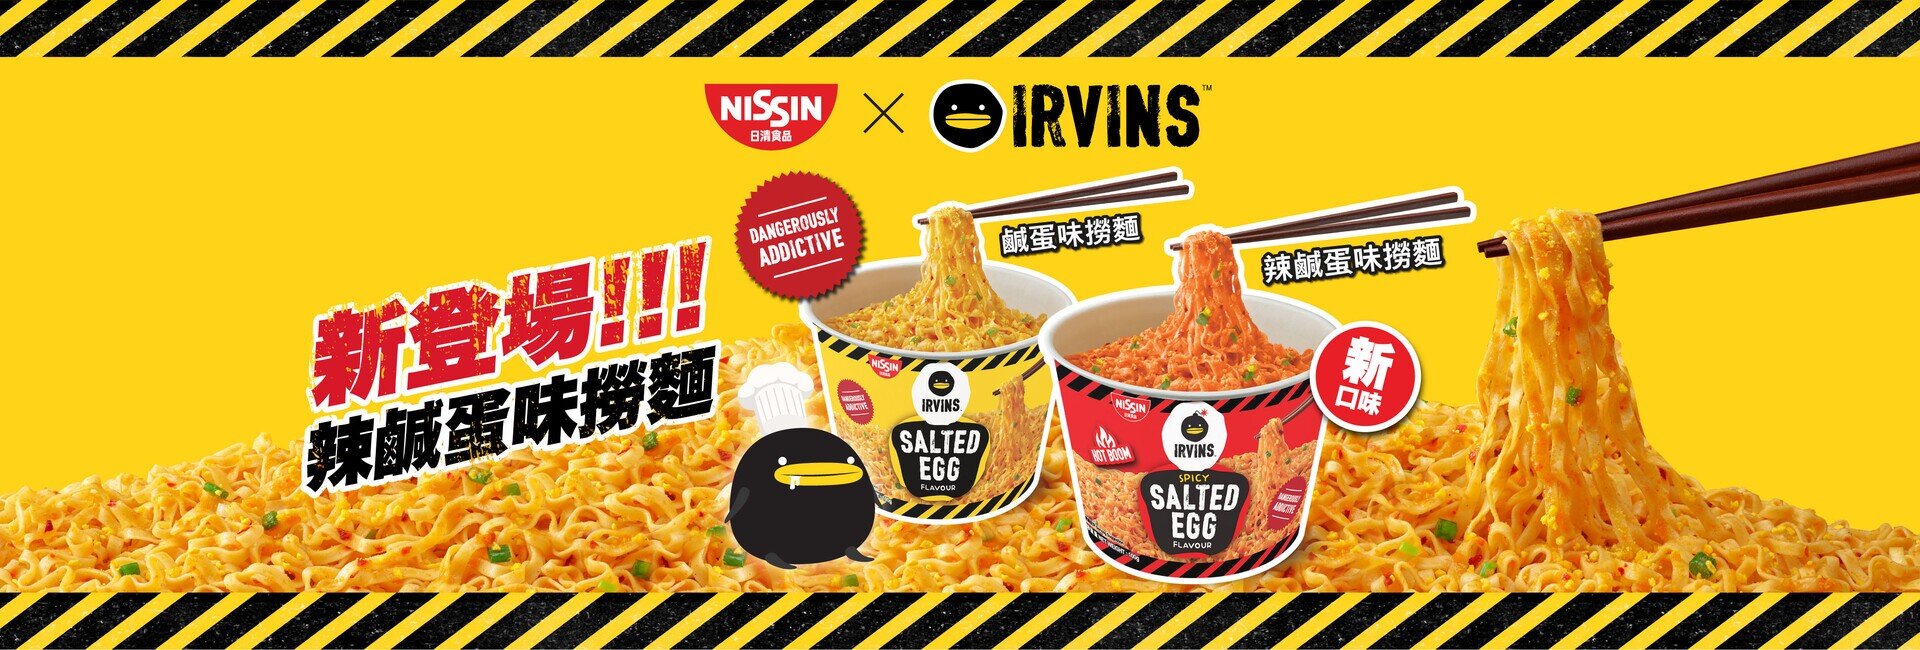 NISSIN x IRVINS 「Salted Egg」、「Hot Boom Salted Egg」Stir Noodle making dangerous addictive again!